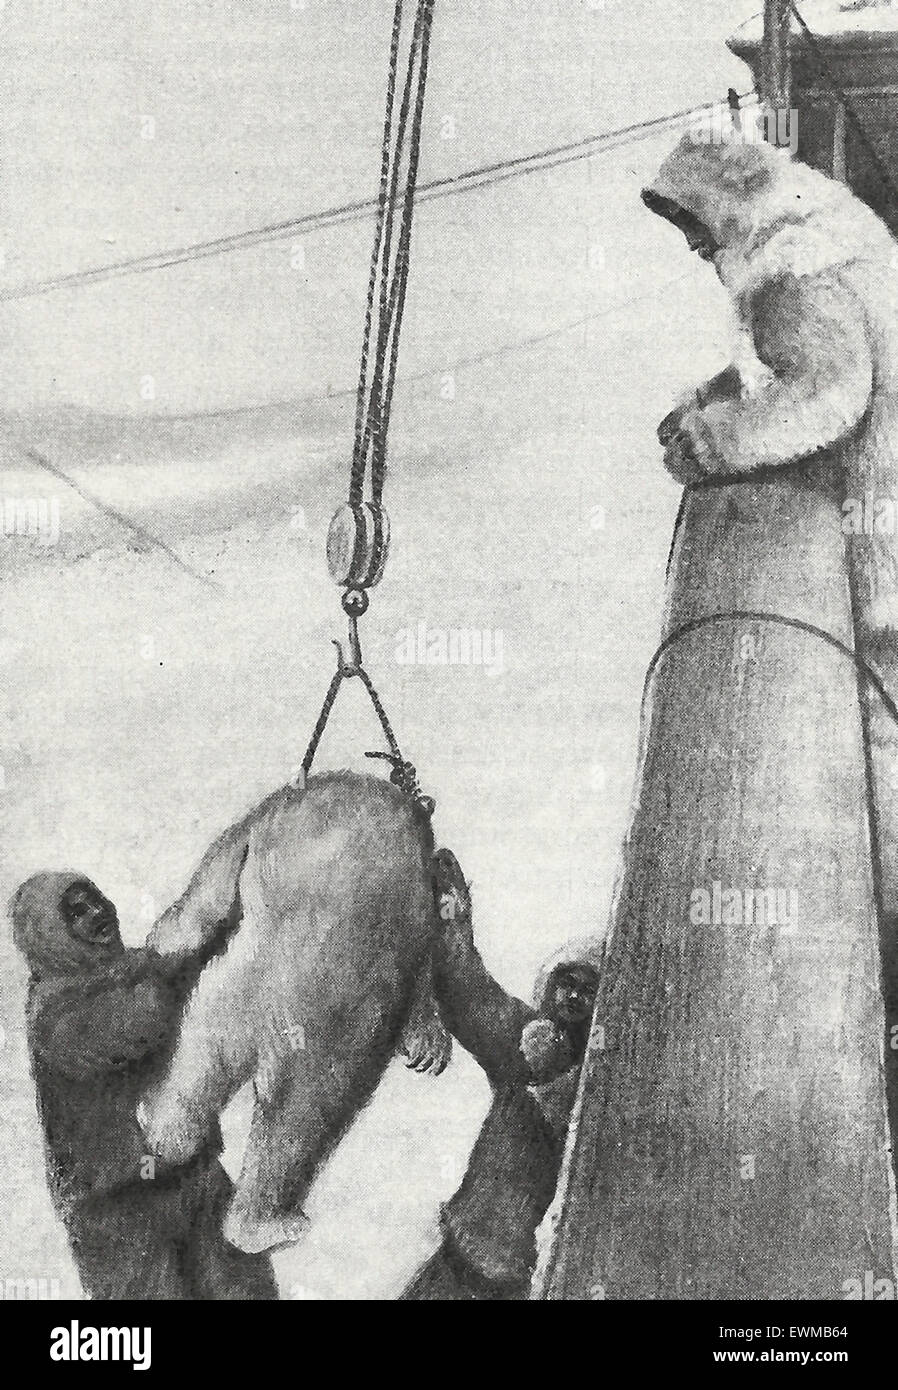 Hissant à bord du Roosevelt l'ours obtenus par l'amiral Robert Peary, partie à la découverte d'entrée de Clements Markham sur l'expédition au pôle Nord, 1909 Banque D'Images